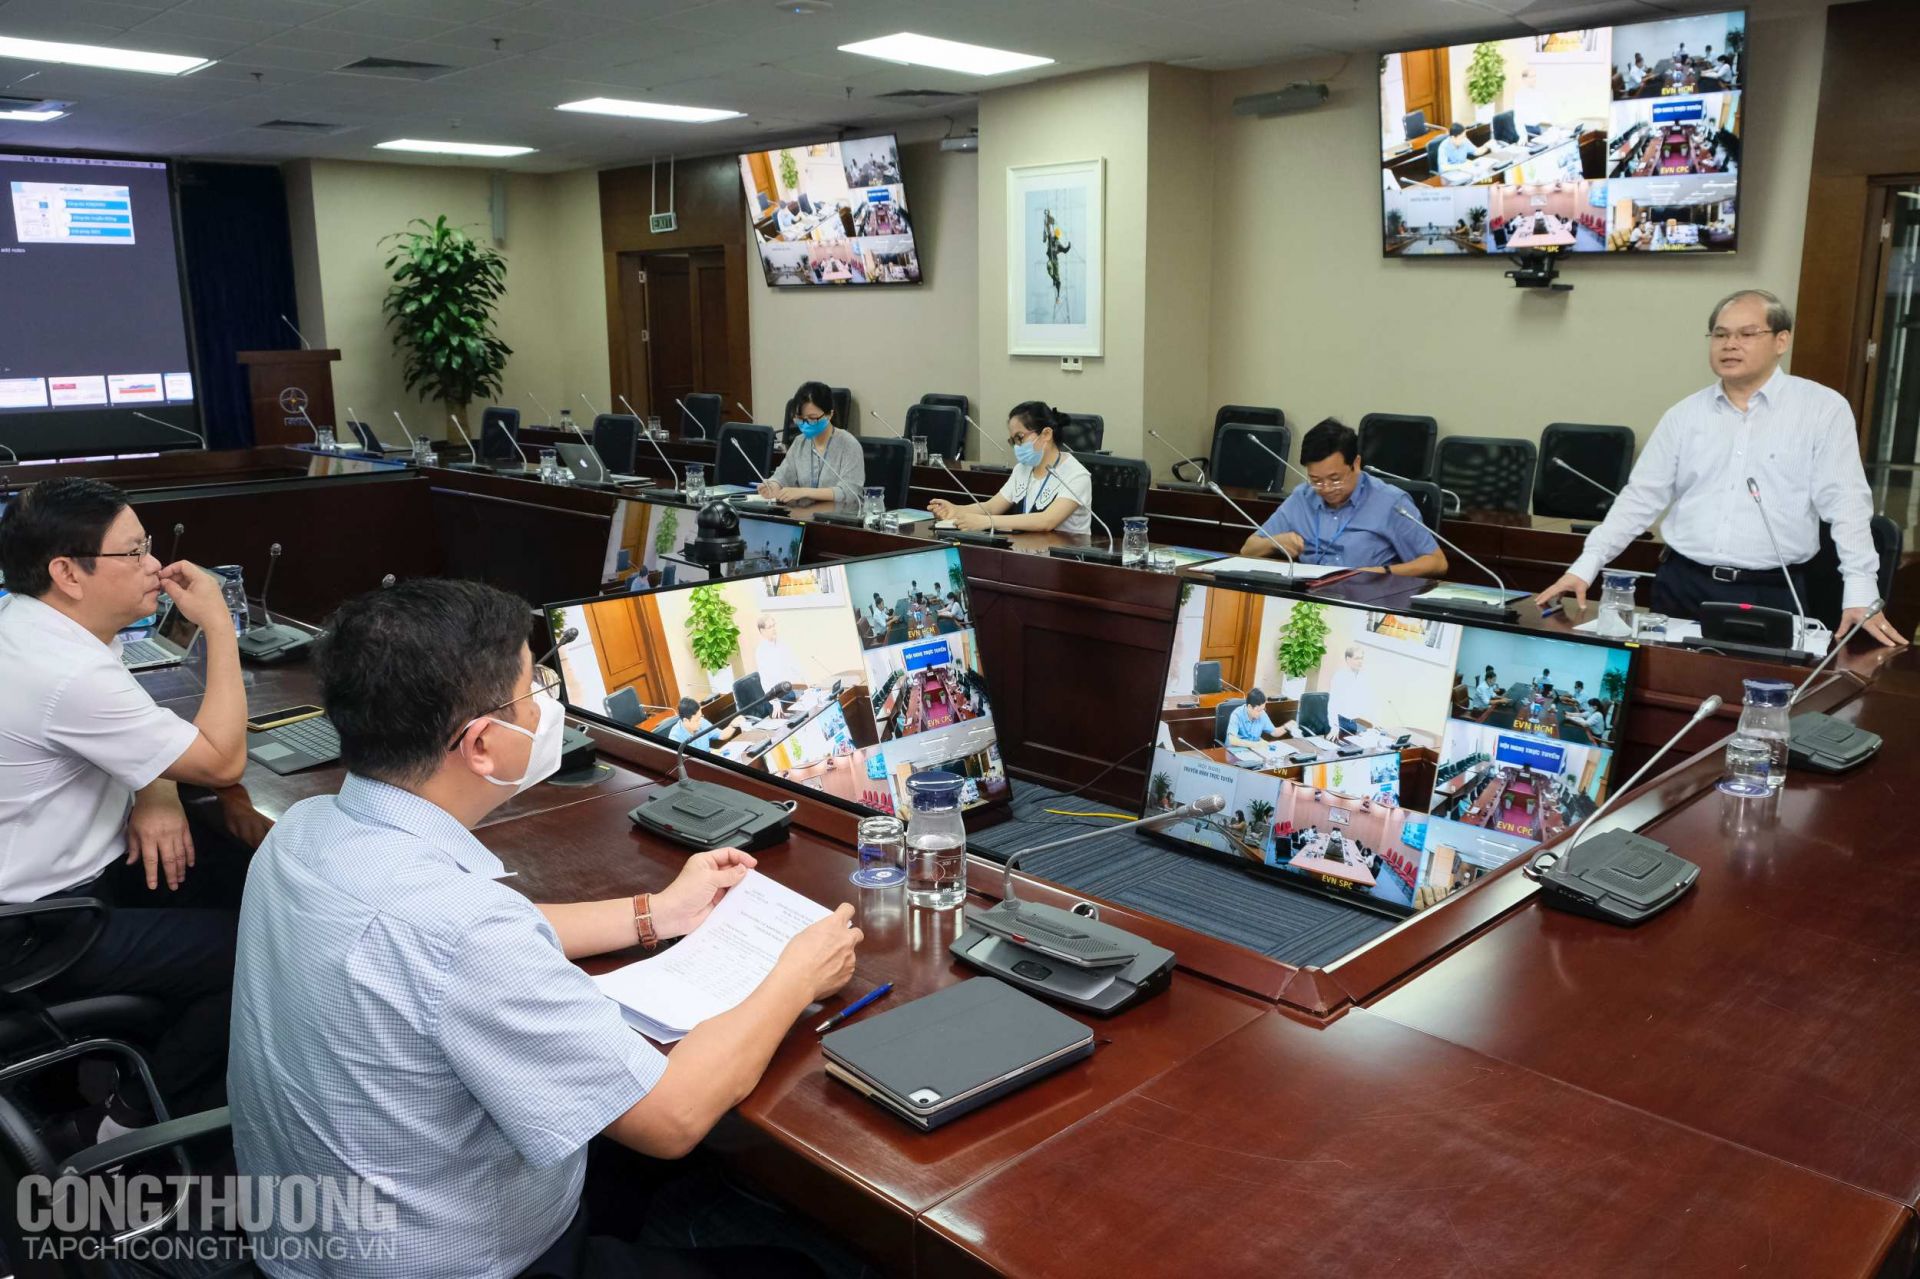 Trước đó, ngày 2/6/2021, Cục Điều tiết điện lực, Bộ Công Thương đã có buổi làm việc với Tập đoàn Điện lực Việt Nam (EVN) và các Tổng Công ty Điện lực về công tác dịch vụ khách hàng và truyền thông về sử dụng điện trong mùa nắng nóng